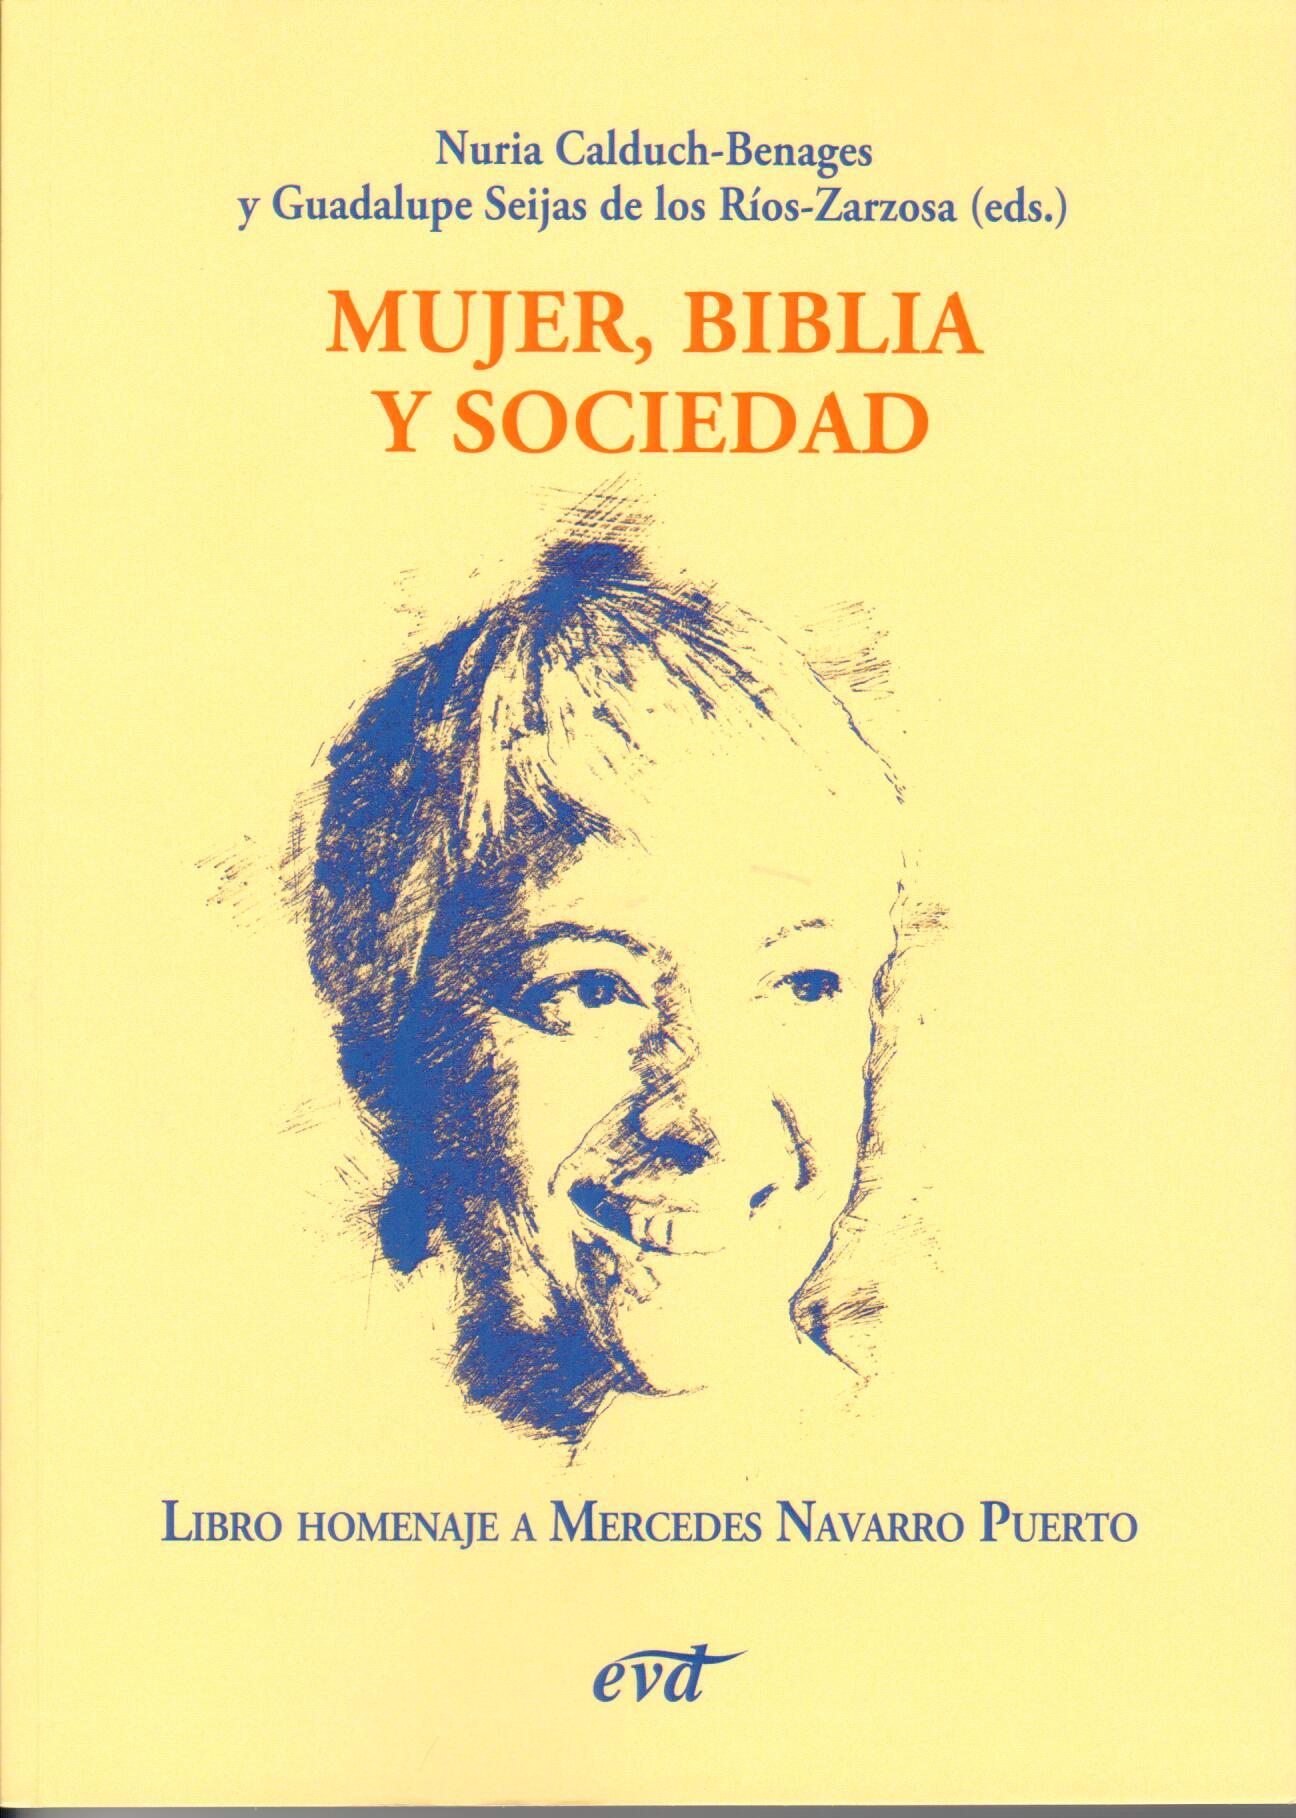 Imagen de portada del libro Mujer, Biblia y sociedad